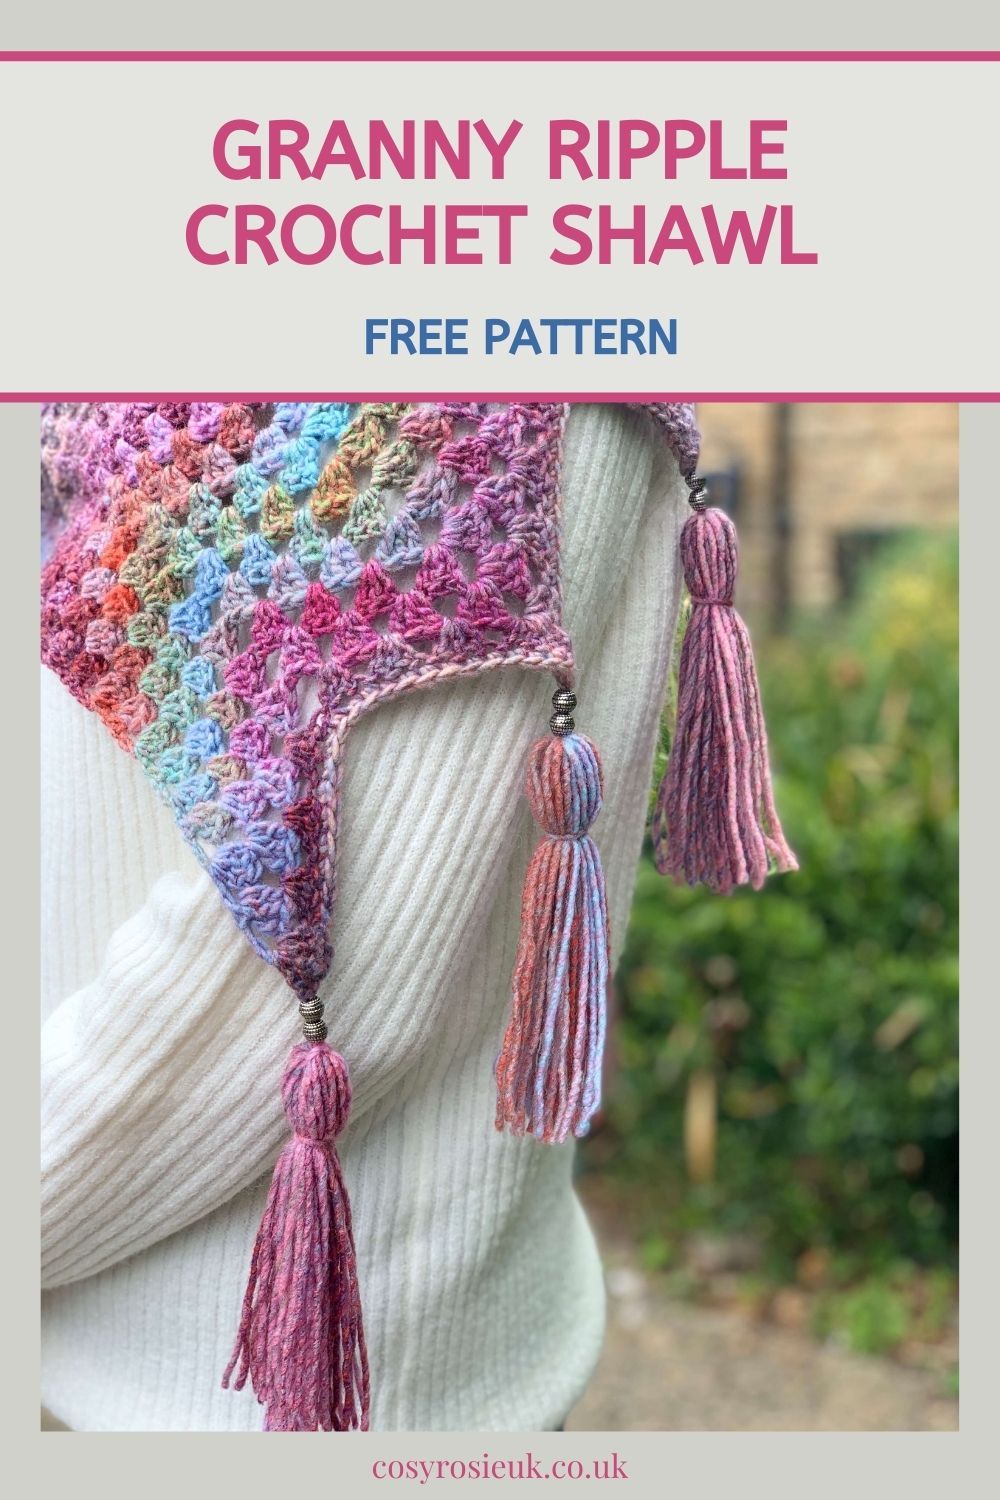 Free Crochet Shawl Pattern